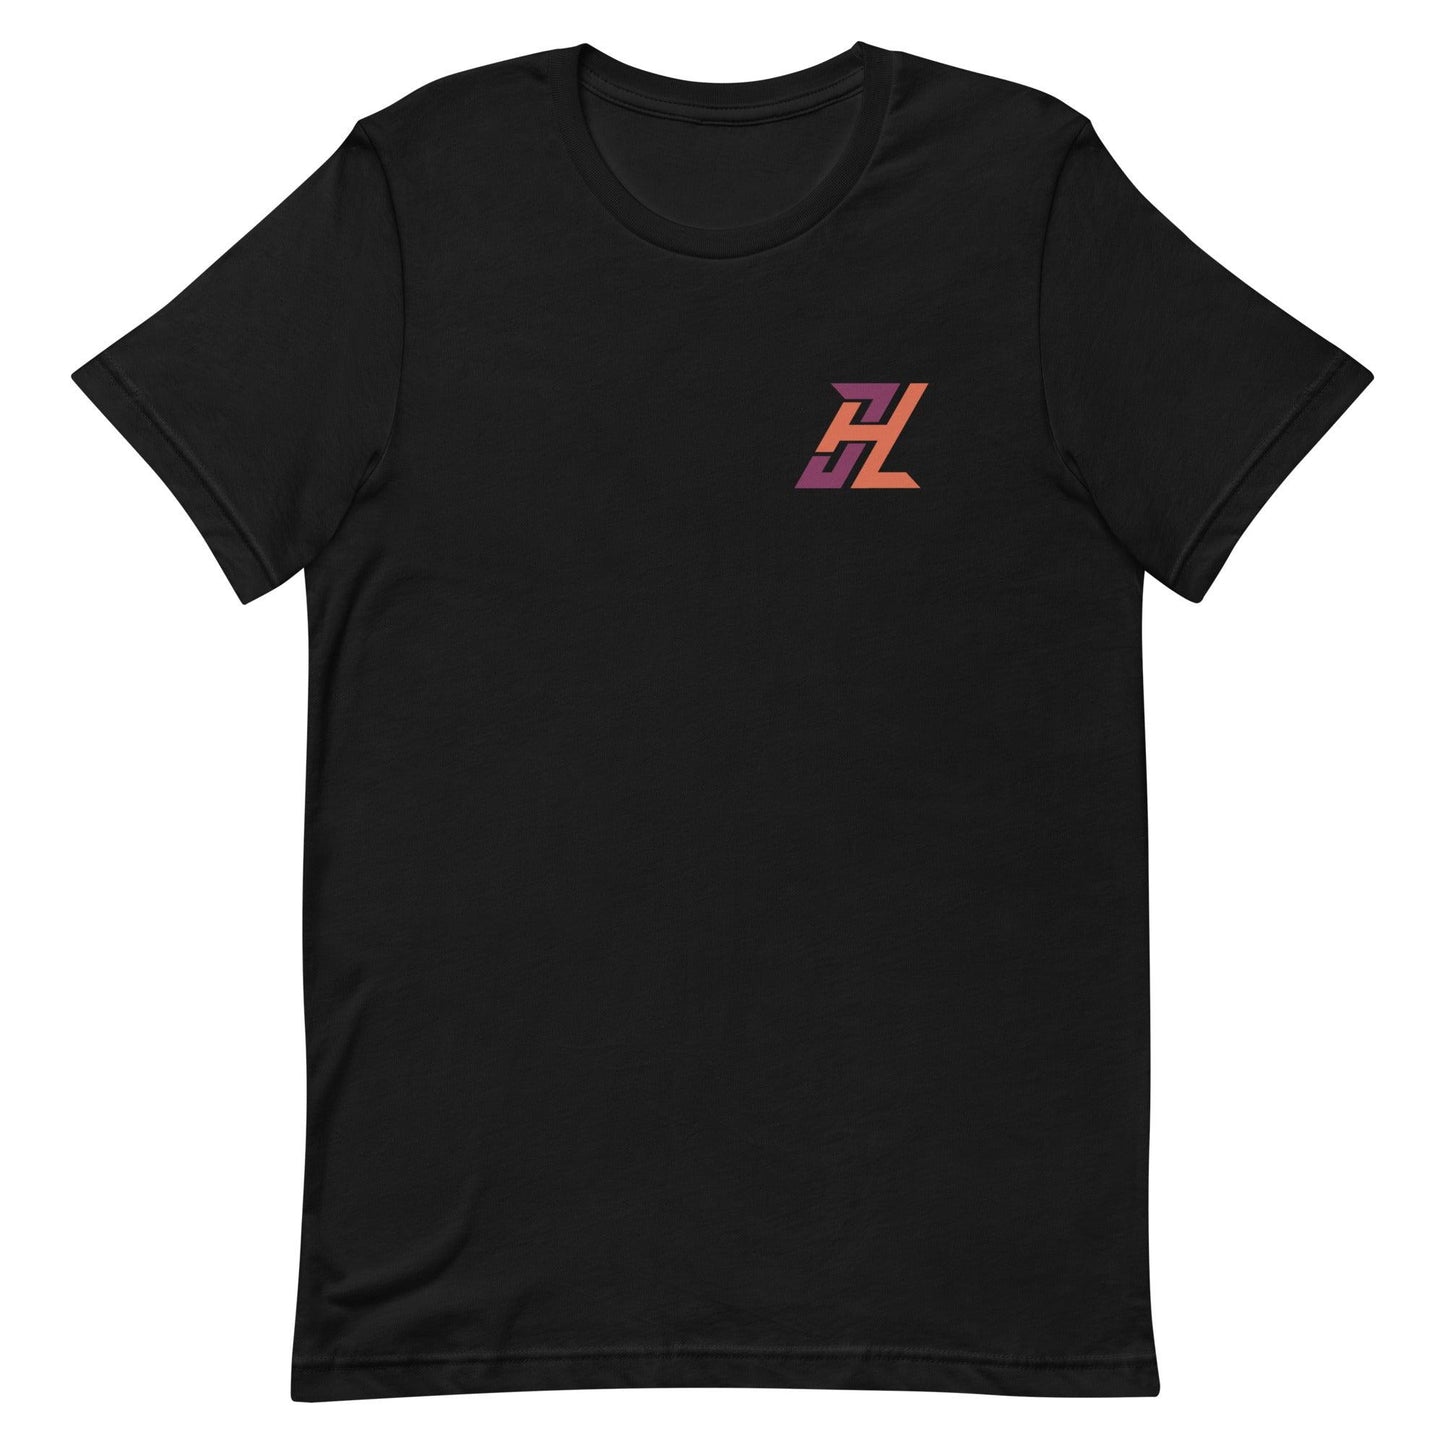 Jack Hurley “JH” t-shirt - Fan Arch